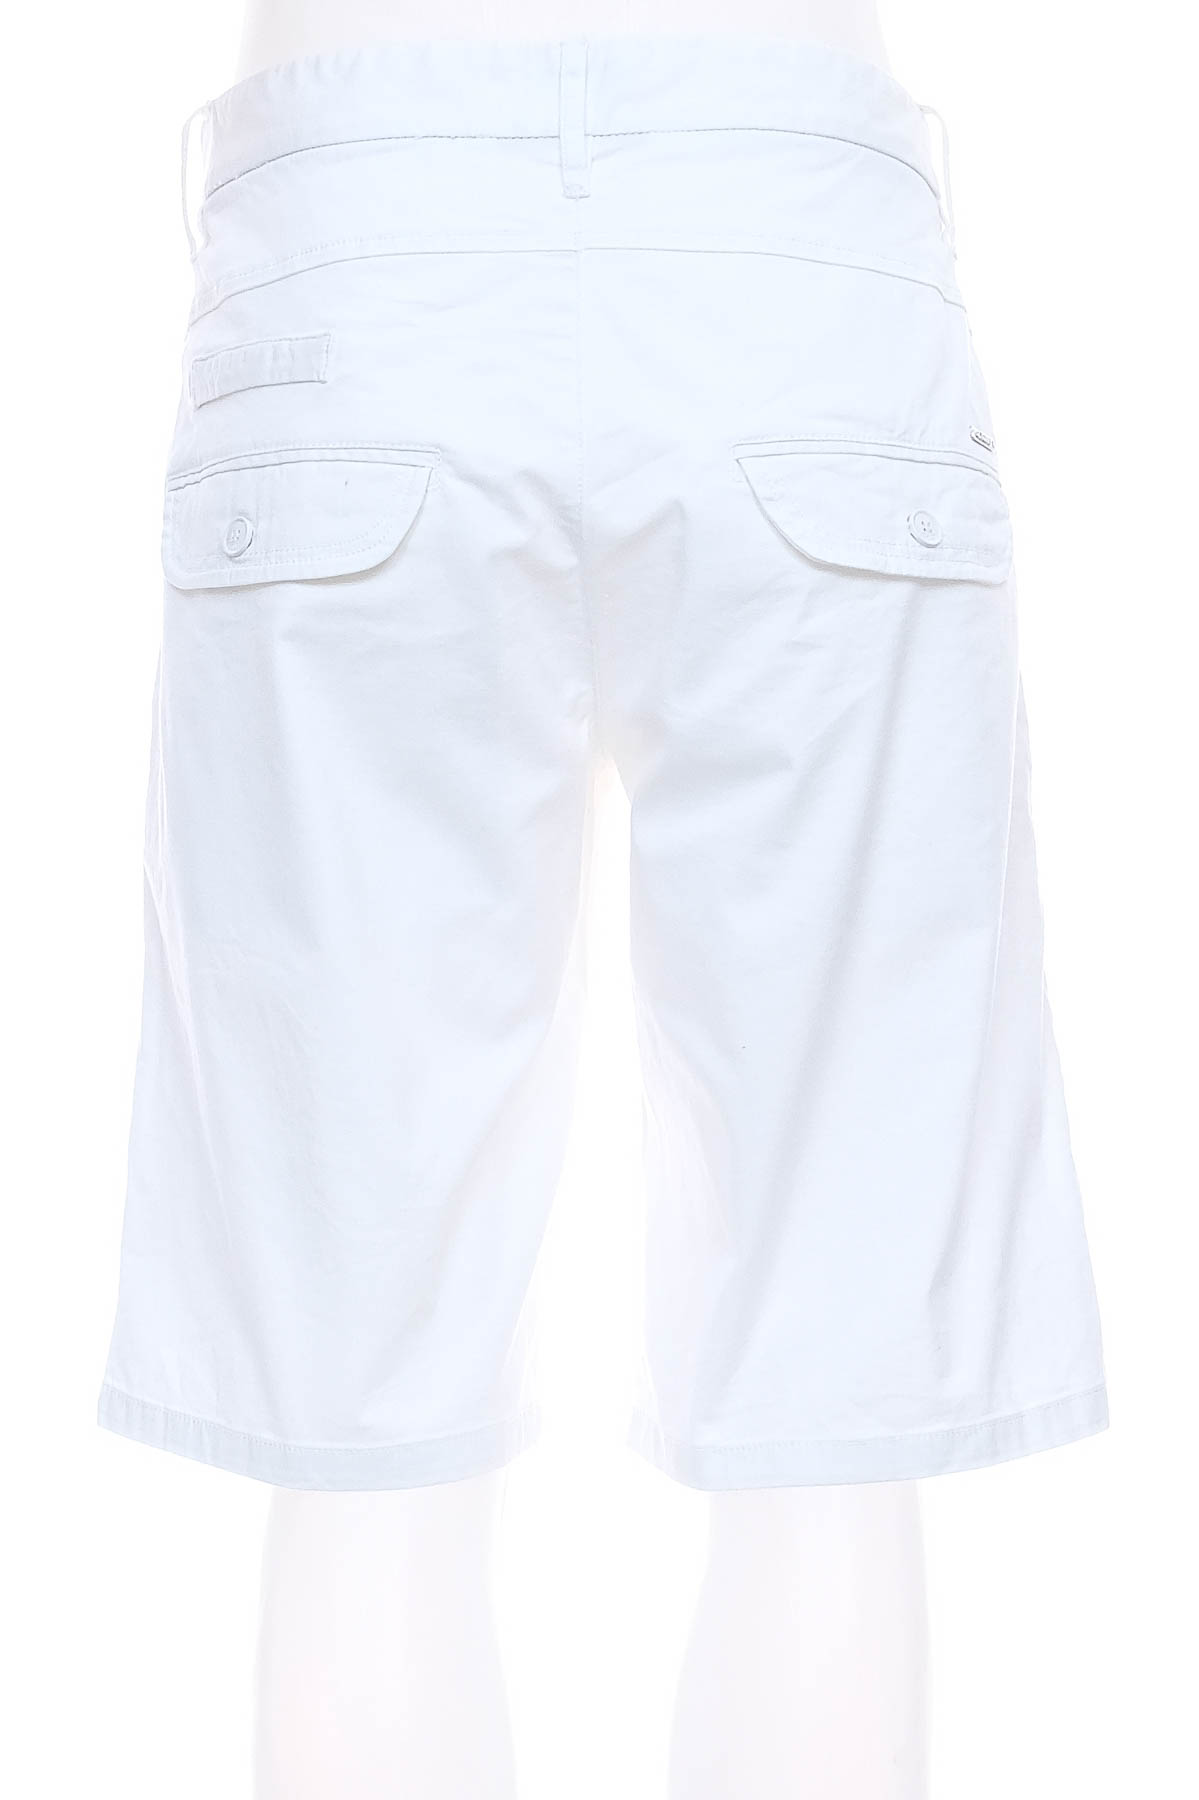 Men's shorts - Gaudi - 1